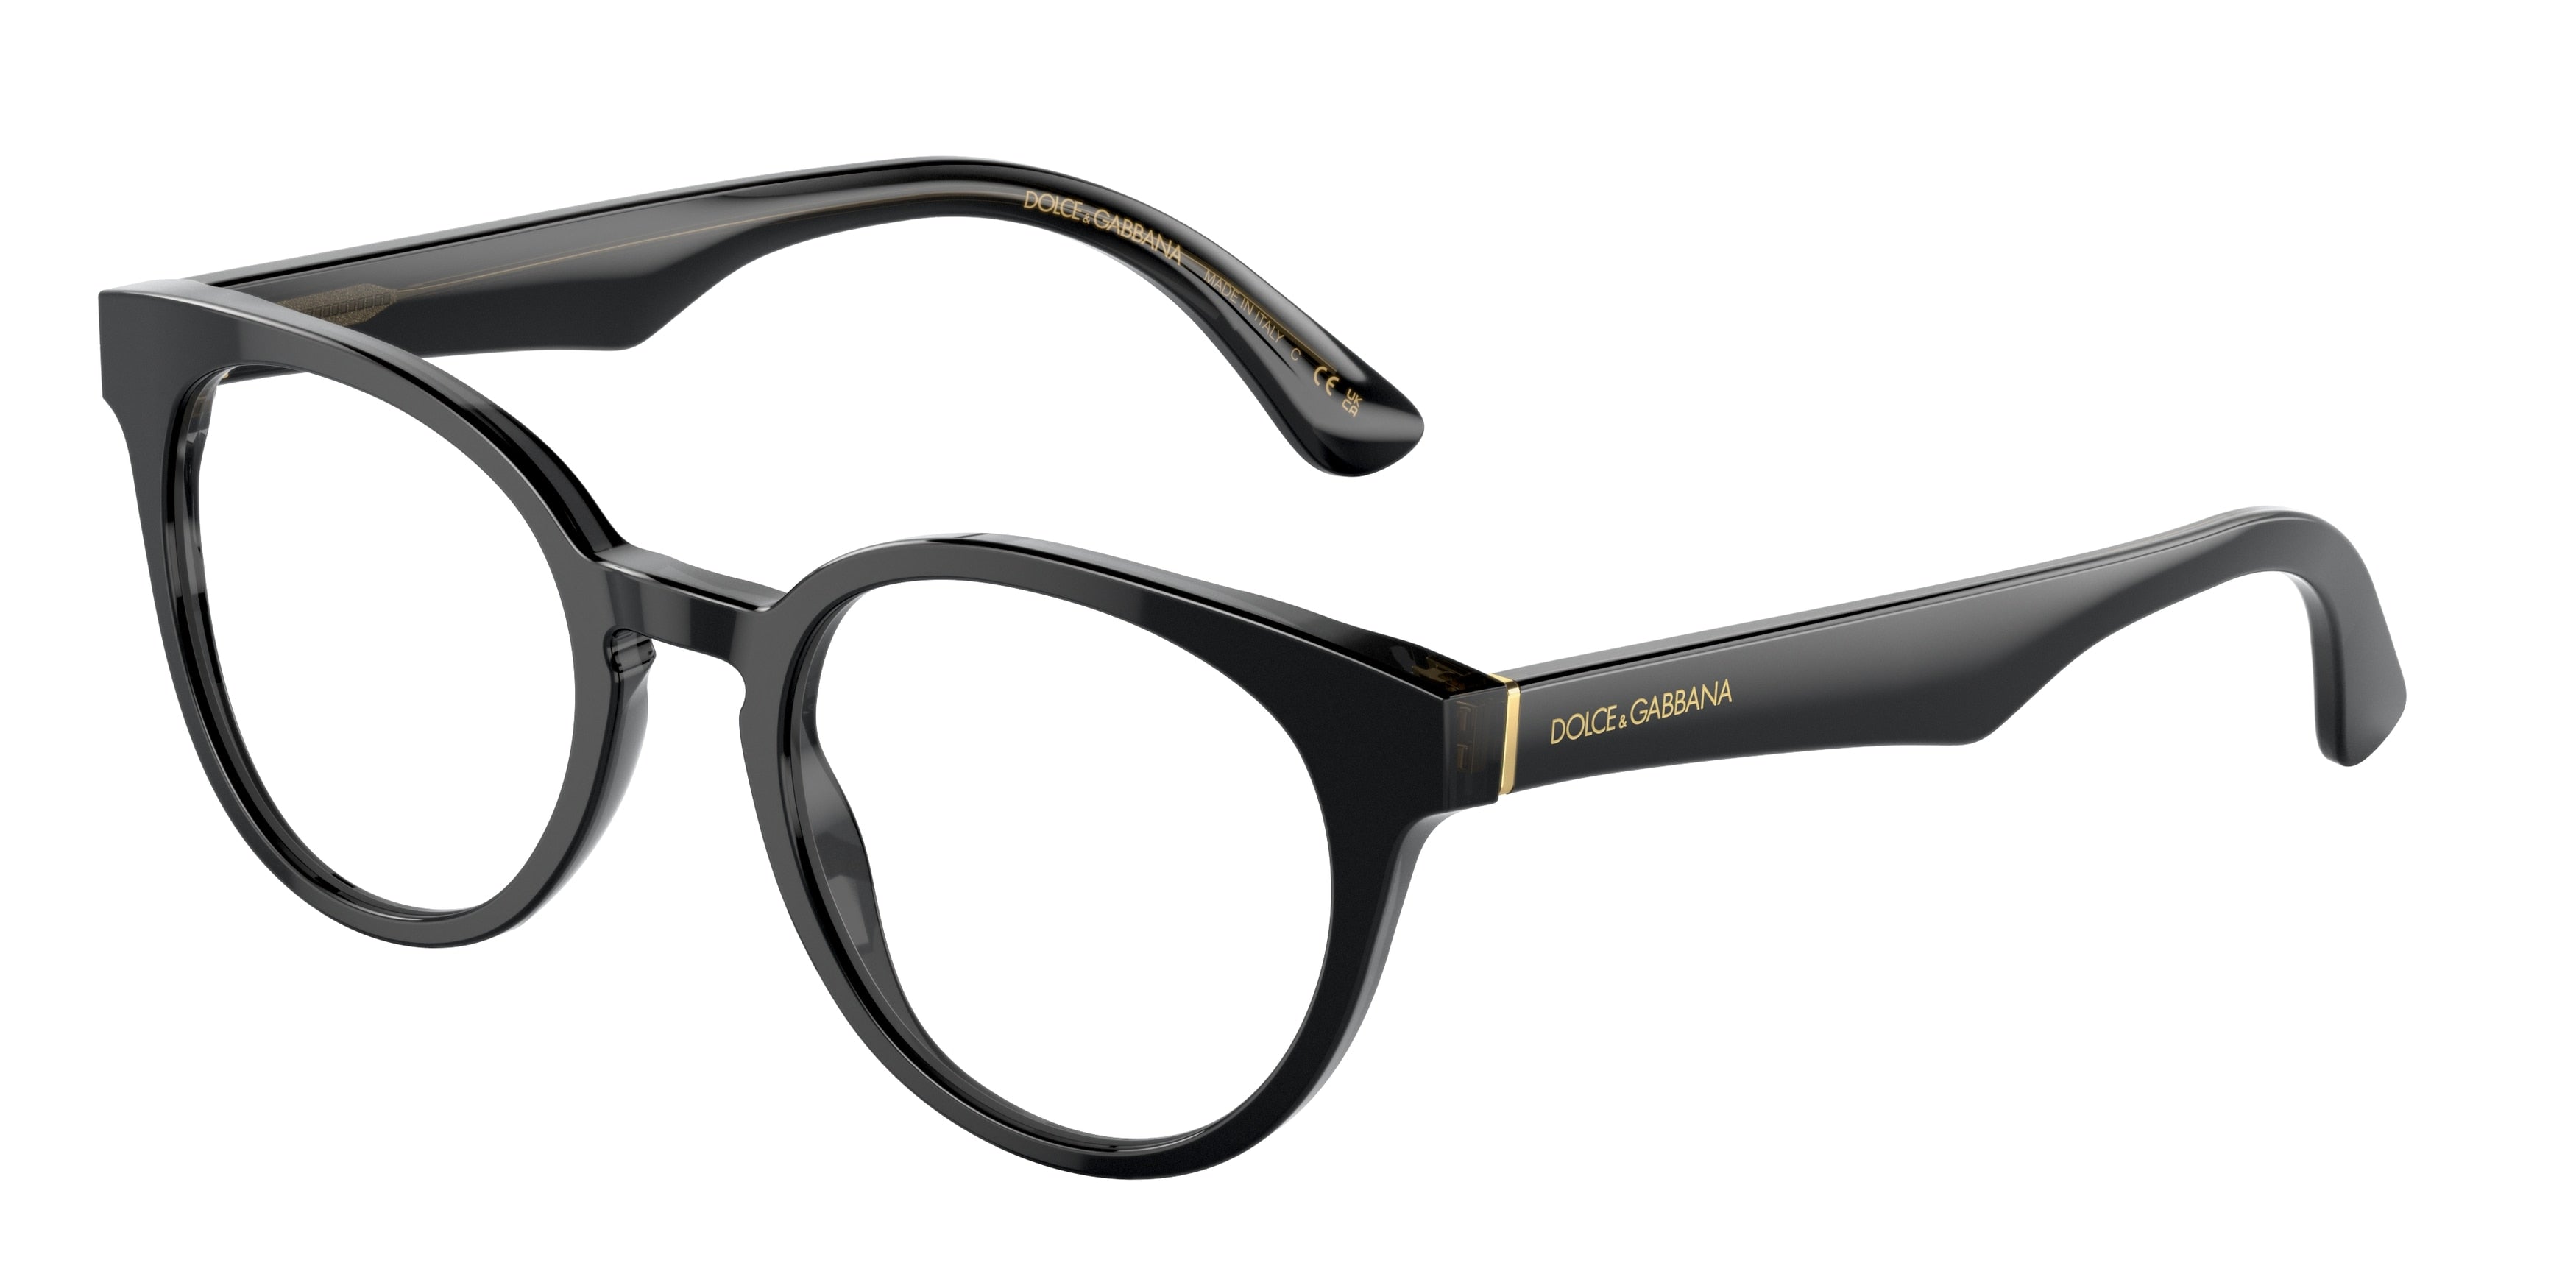 DOLCE & GABBANA DG3361 Round Eyeglasses  3246-Black/Transparent Grey 50-145-20 - Color Map Black